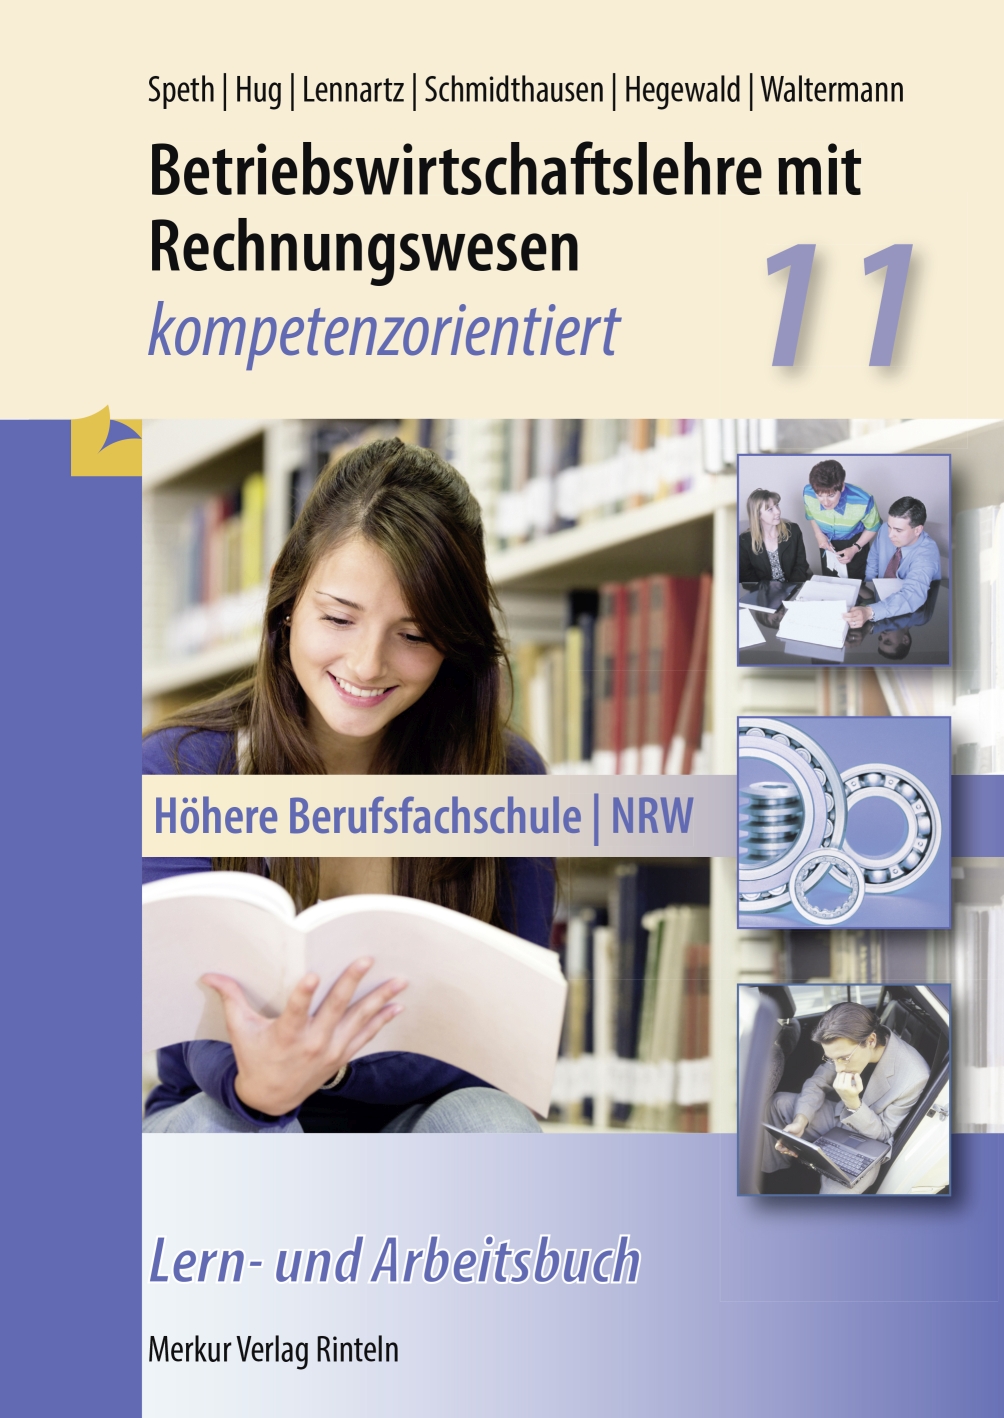 Betriebswirtschaftslehre mit Rechnungswesen - kompetenzorientiert Höhere Berufsfachschule - NRW Klasse 11